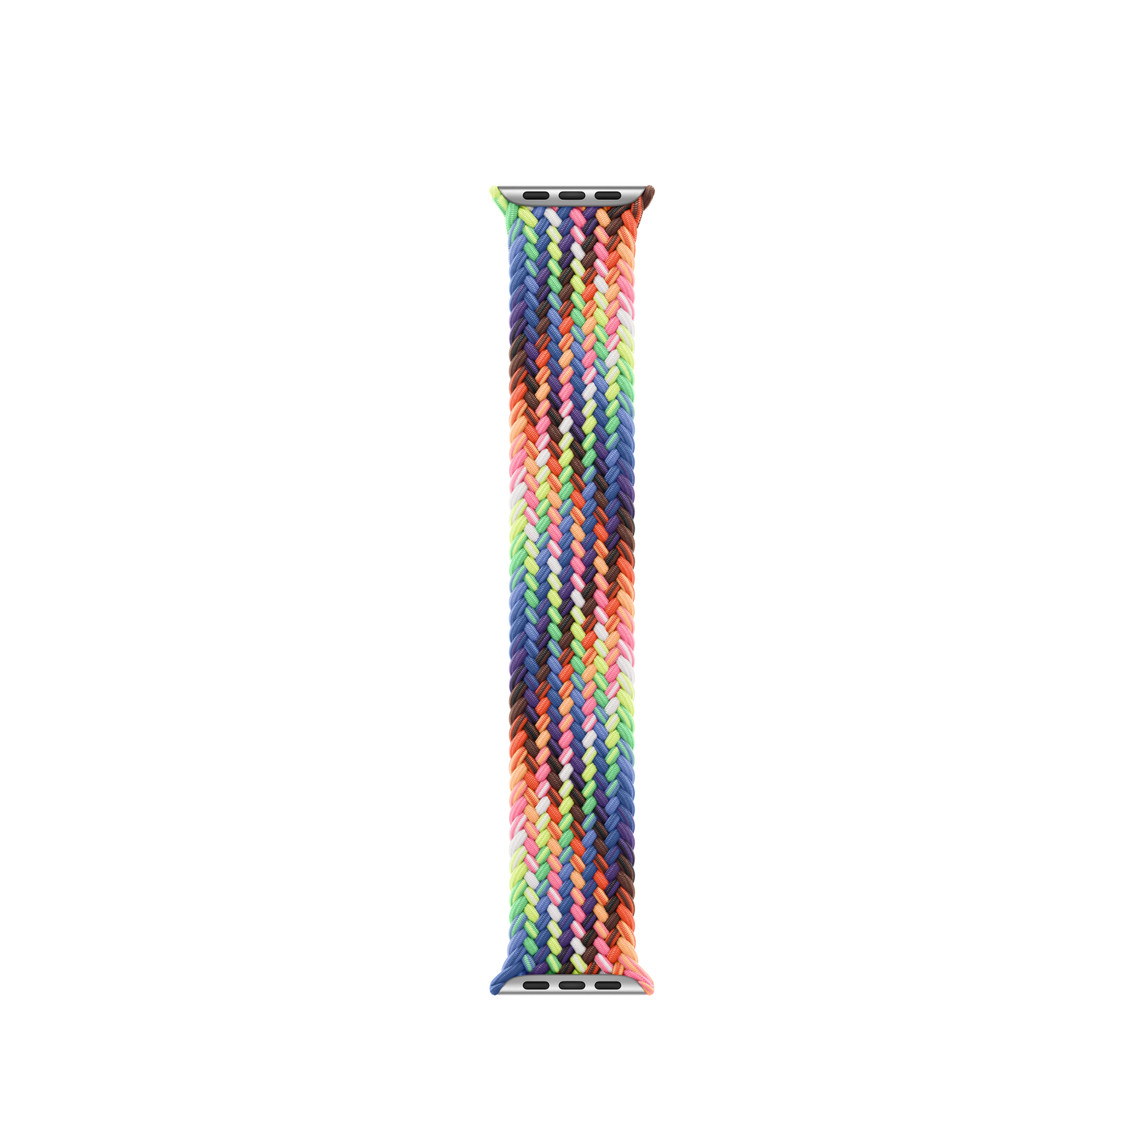 Correa uniloop trenzada Edición Orgullo, hecha de hilos tejidos de colores fluorescentes y vibrantes inspirados por la bandera arcoíris del Orgullo, sin hebillas ni cierres.